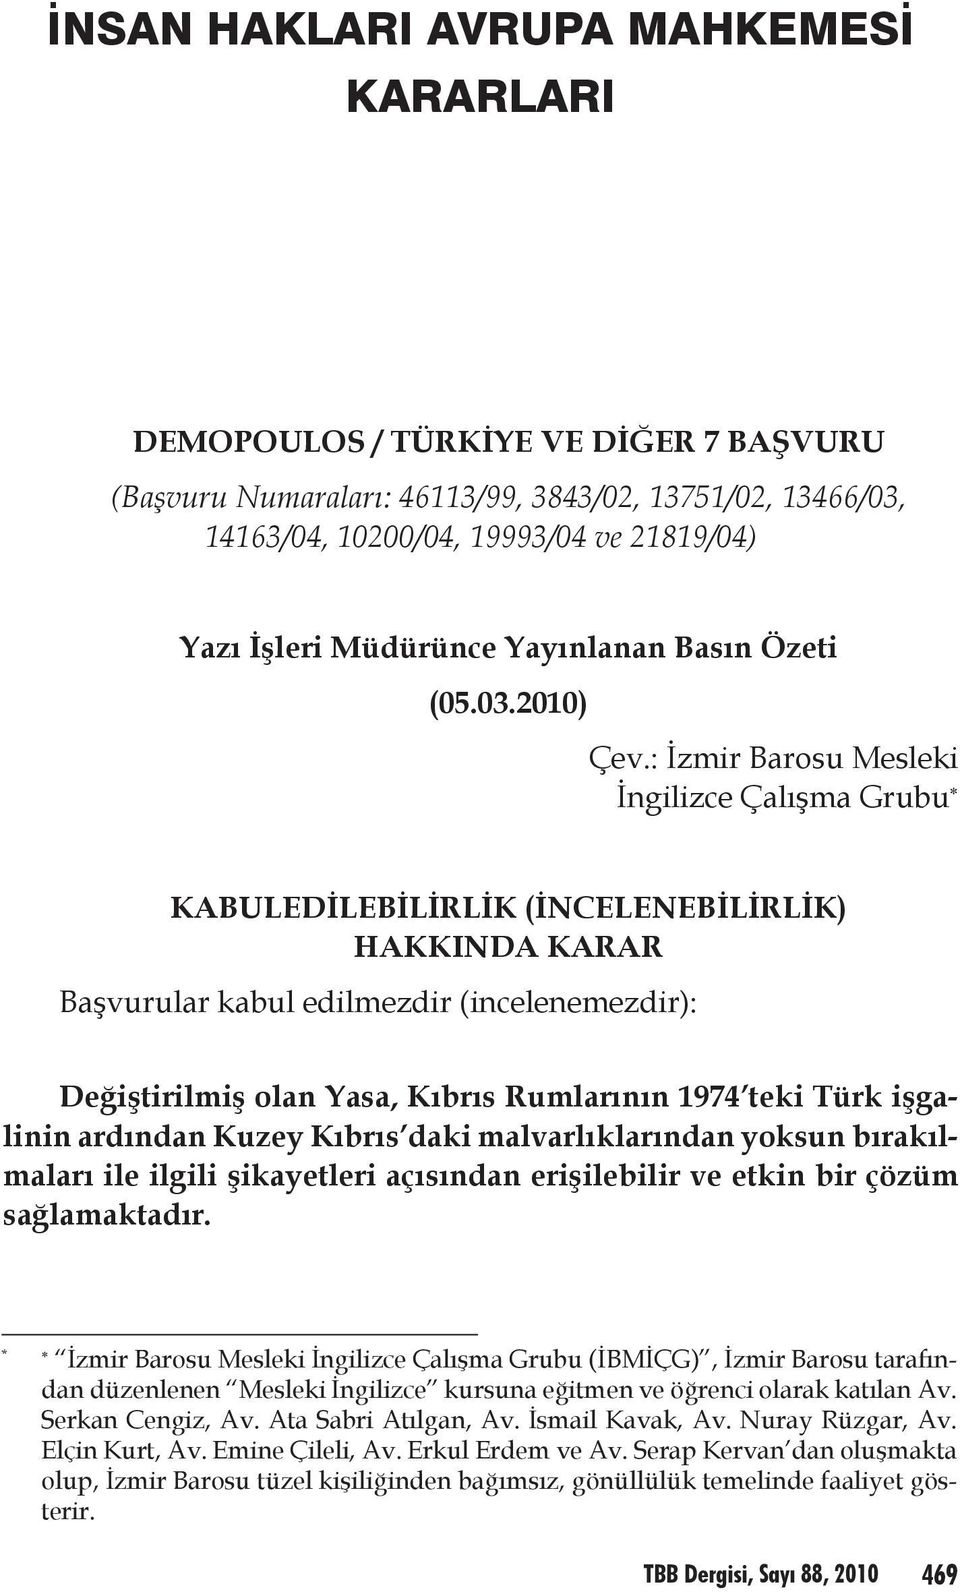 : İzmir Barosu Mesleki İngilizce Çalışma Grubu * KABULEDİLEBİLİRLİK (İNCELENEBİLİRLİK) HAKKINDA KARAR Başvurular kabul edilmezdir (incelenemezdir): Değiştirilmiş olan Yasa, Kıbrıs Rumlarının 1974